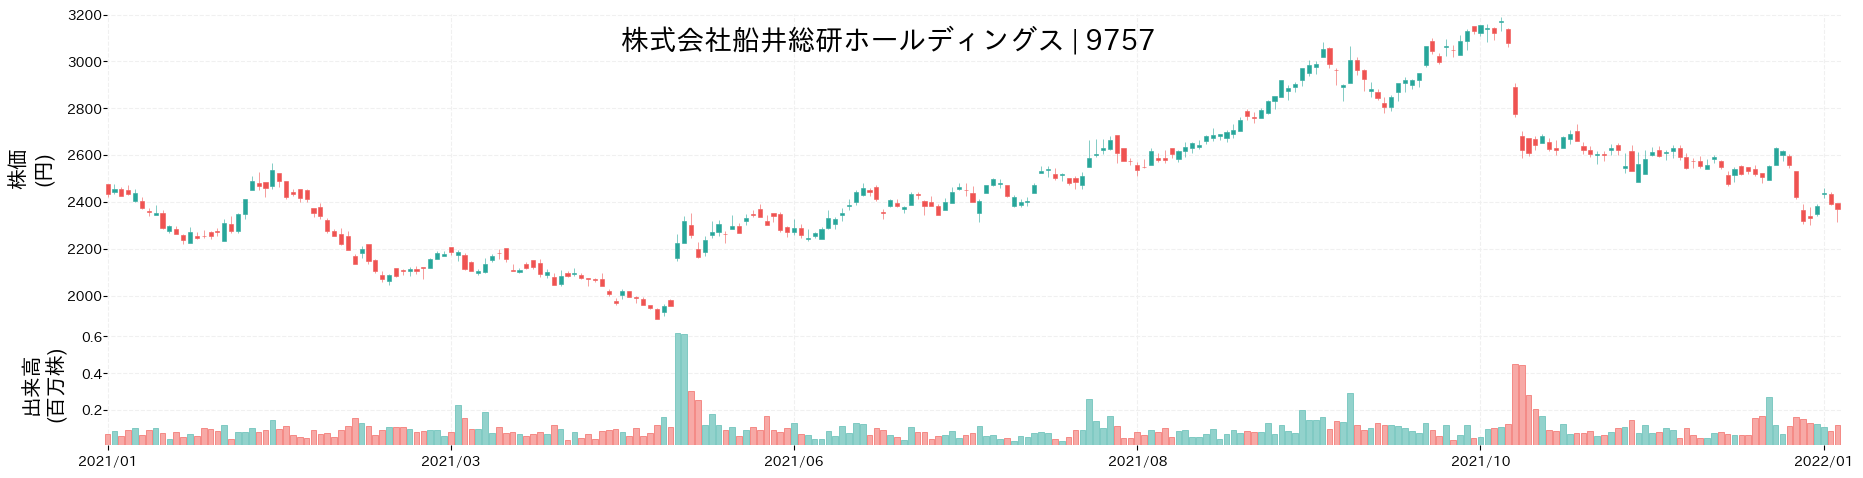 船井総研ホールディングスの株価推移(2021)